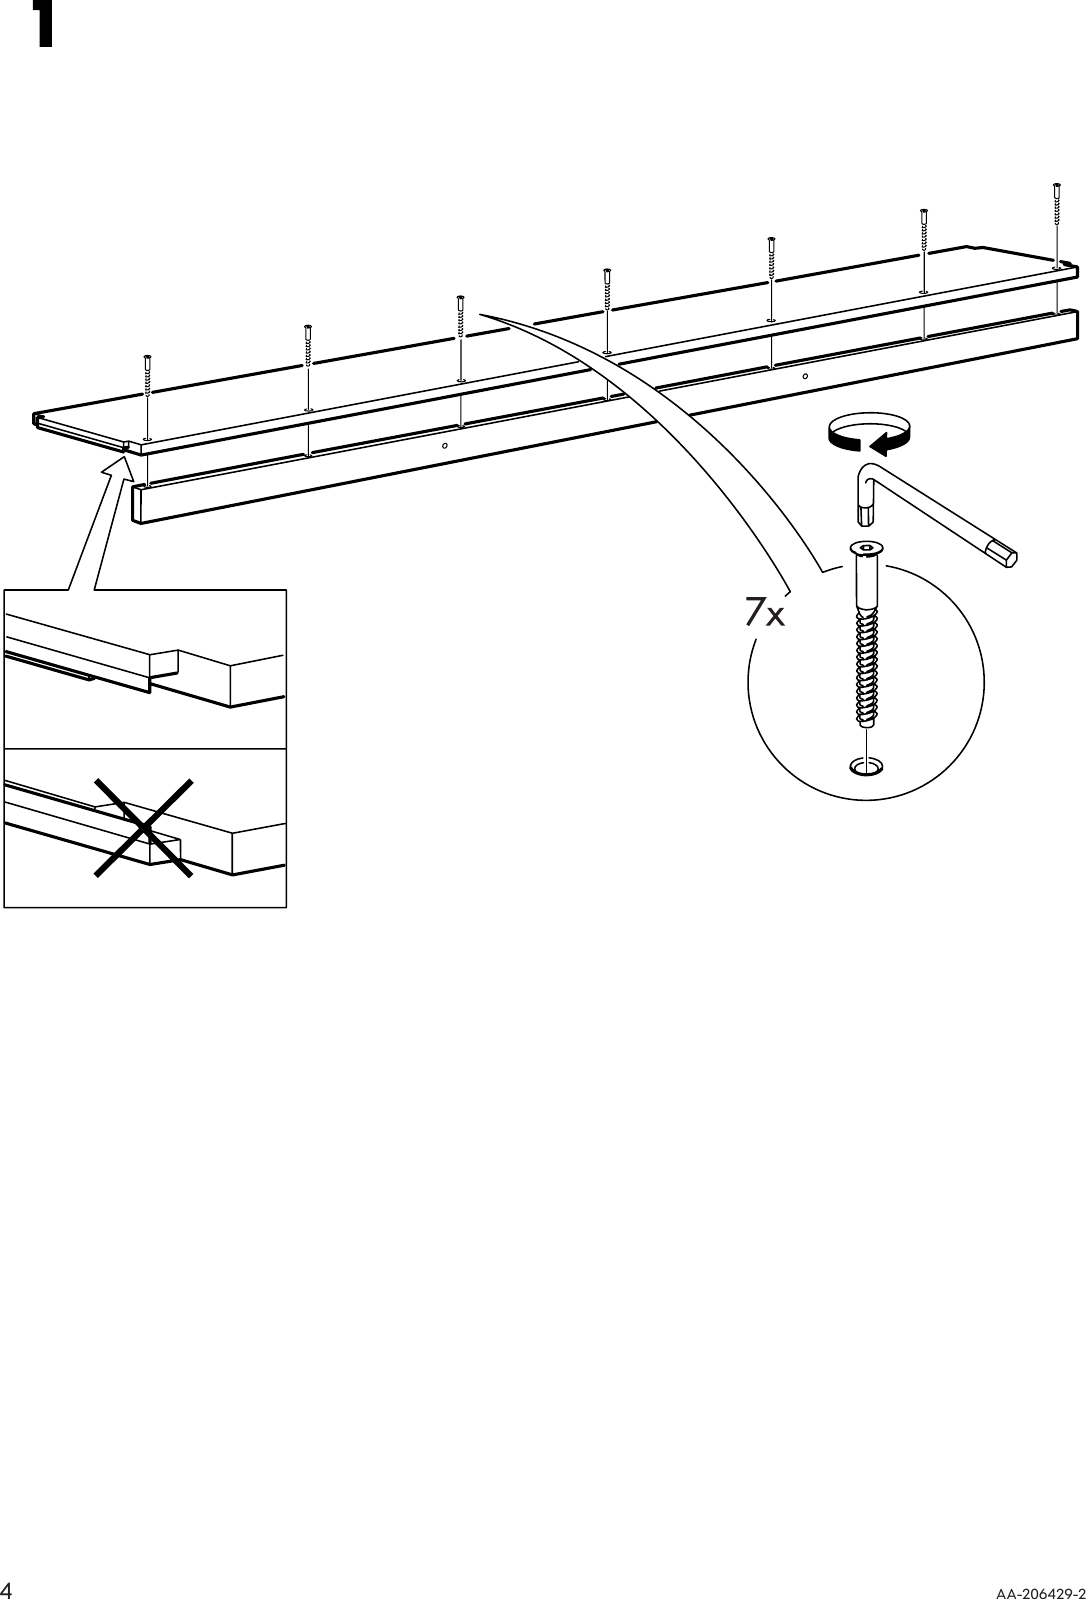 Page 4 of 8 - Ikea Ikea-Ivar-Shelf-82-5-8X11-3-4-Assembly-Instruction